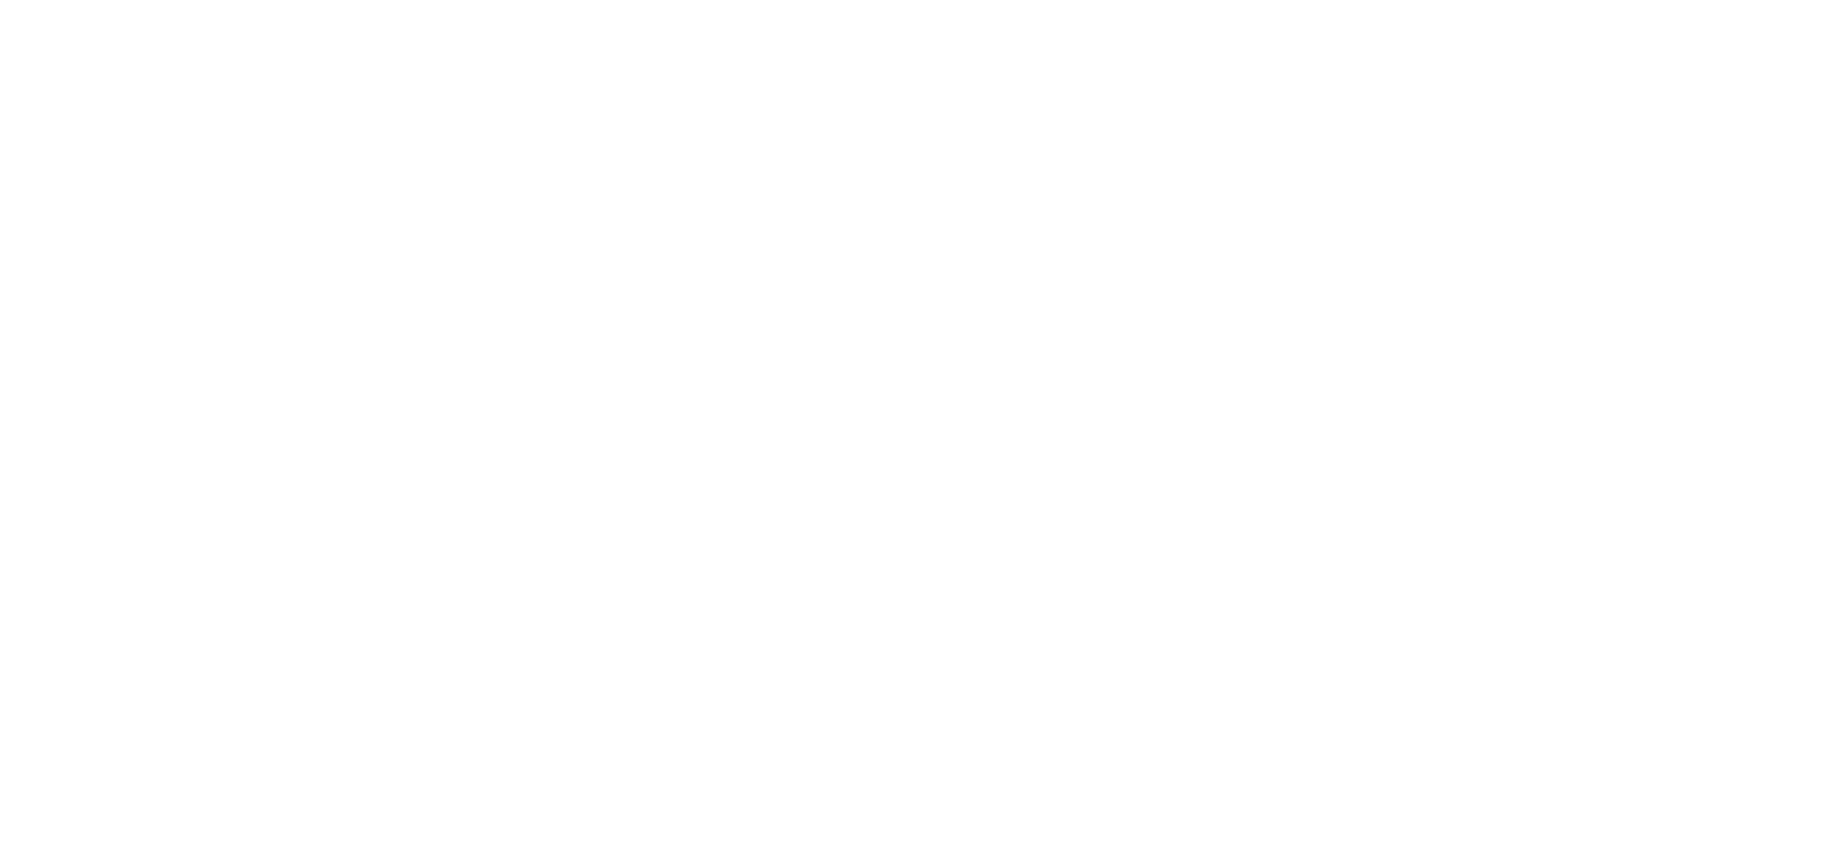 Keep it fun